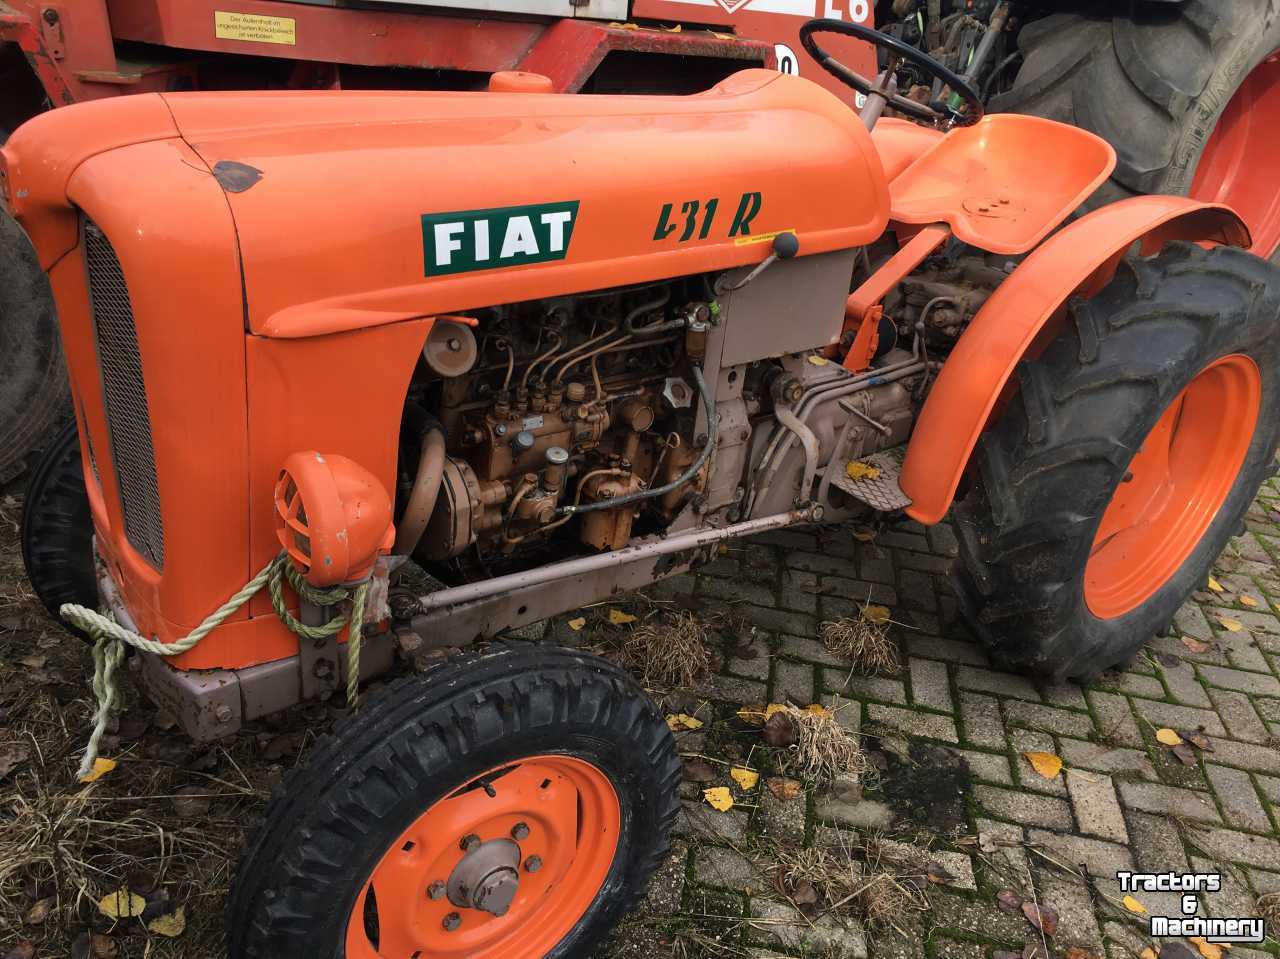 Fiat 431R - Used Oldtimers - 5291 AC - Gemonde - Noord-Brabant ...